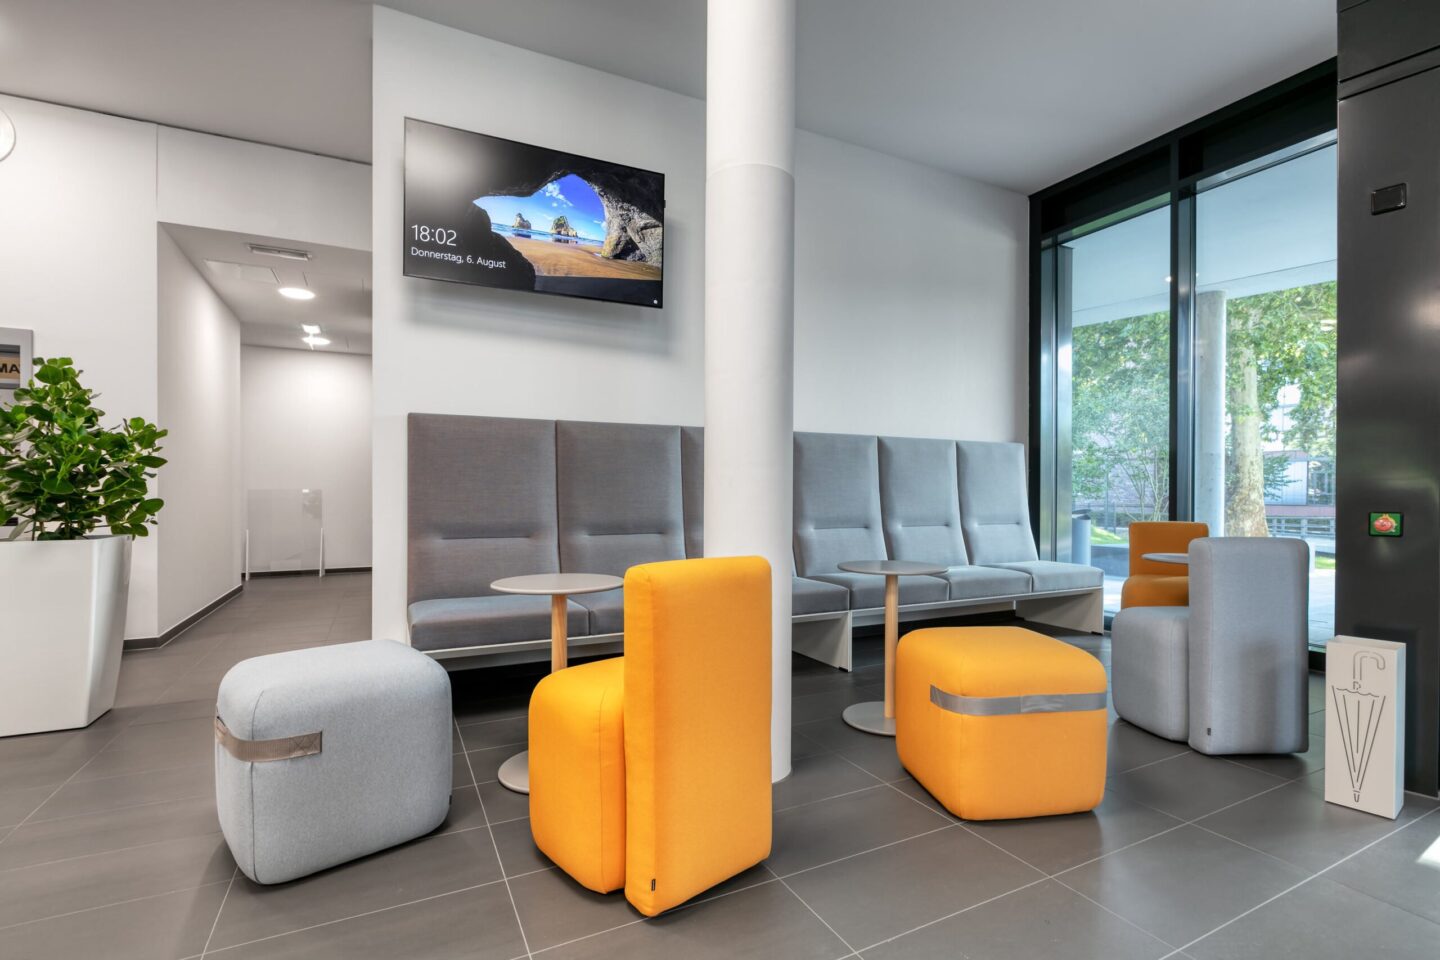 Landratsamt Karlsruhe │ lounge furniture │ modern office furniture